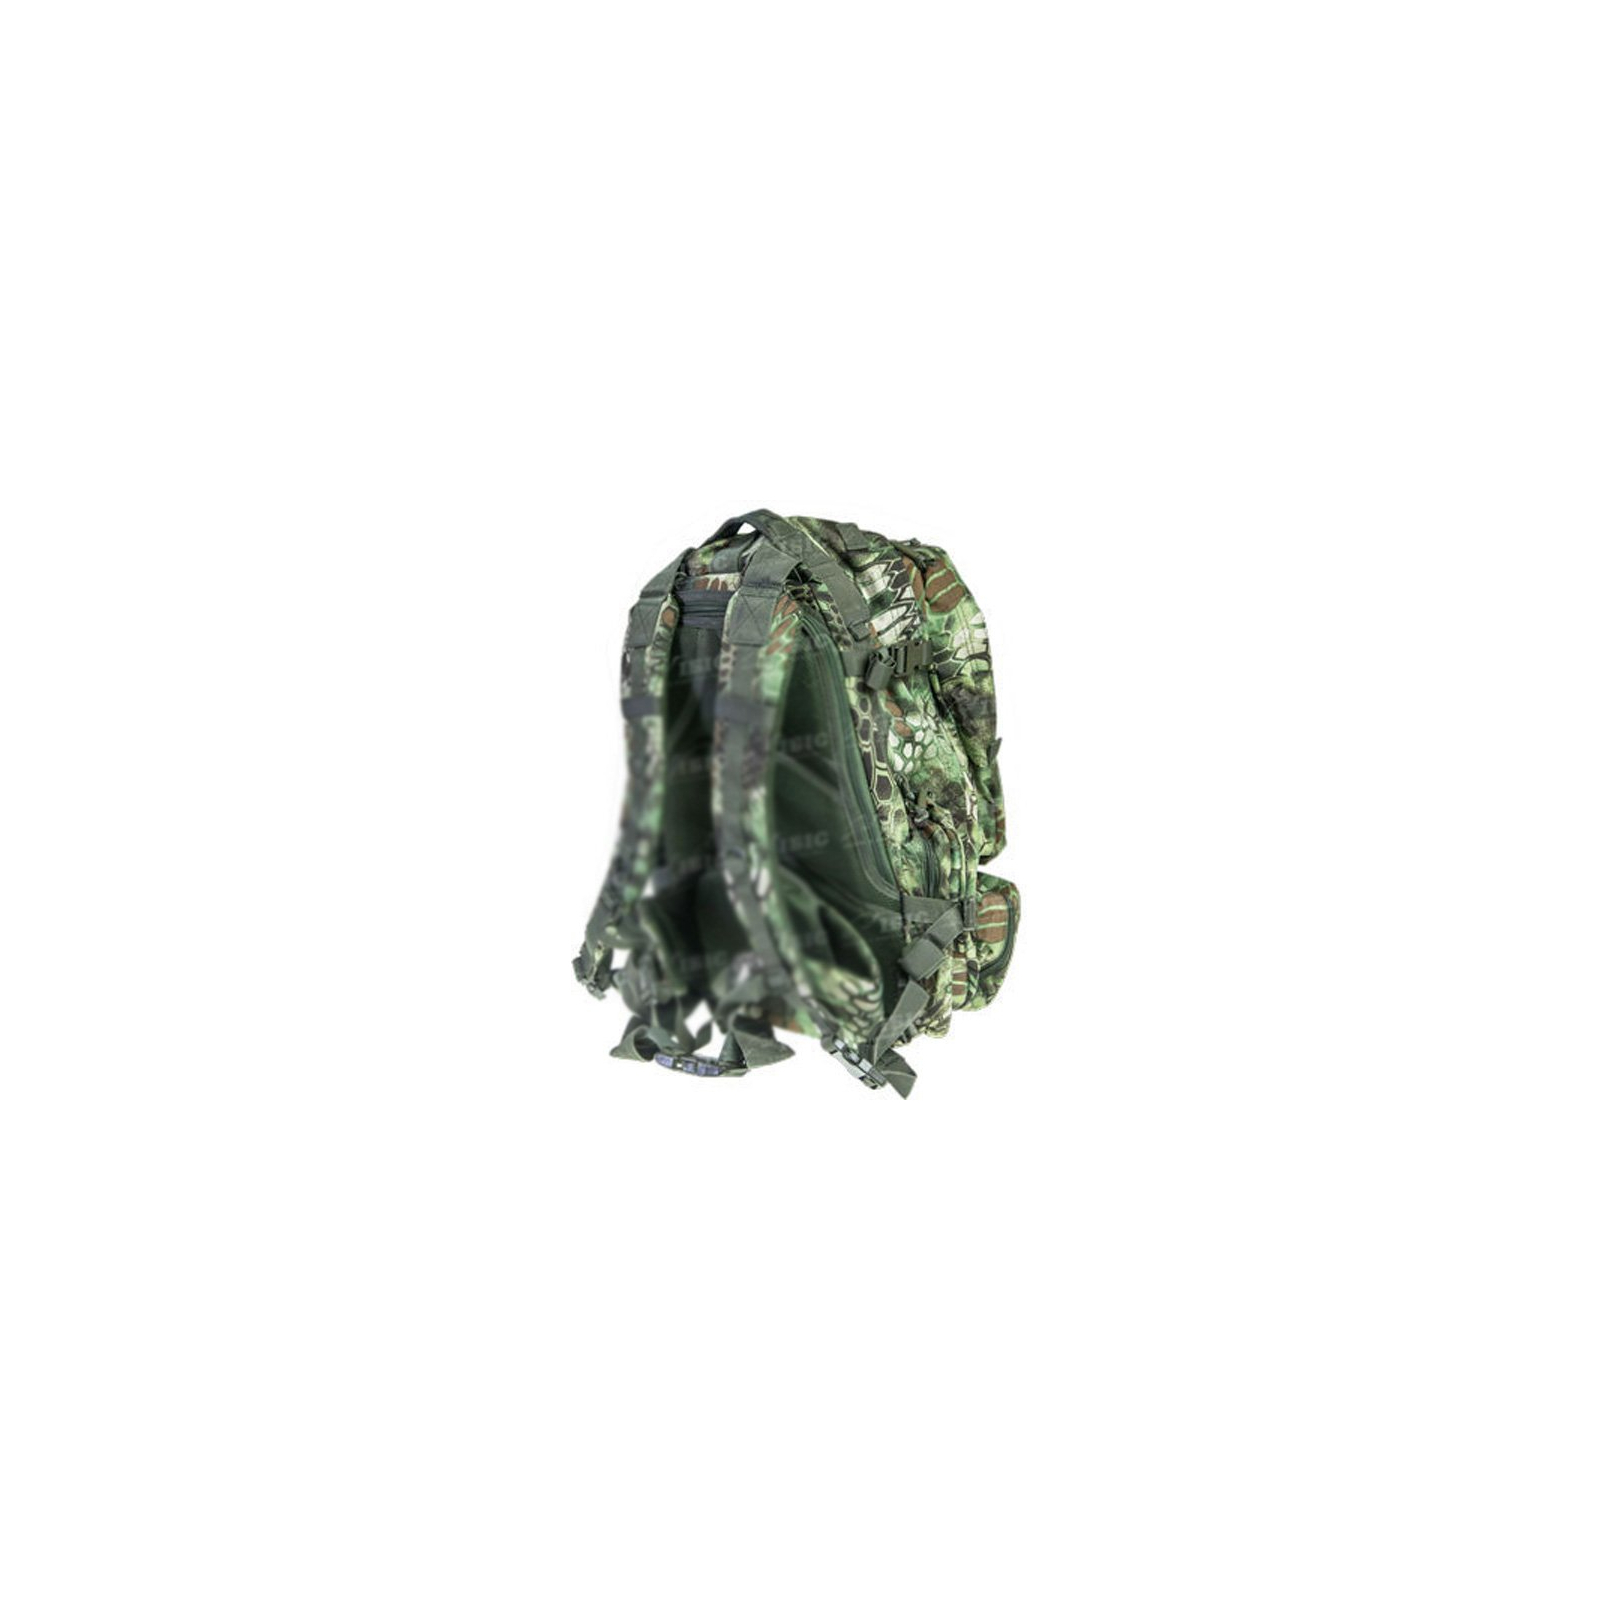 Рюкзак туристичний Skif Tac тактический 3-х дневный 45 литров kryptek green (2795.02.55) зображення 2